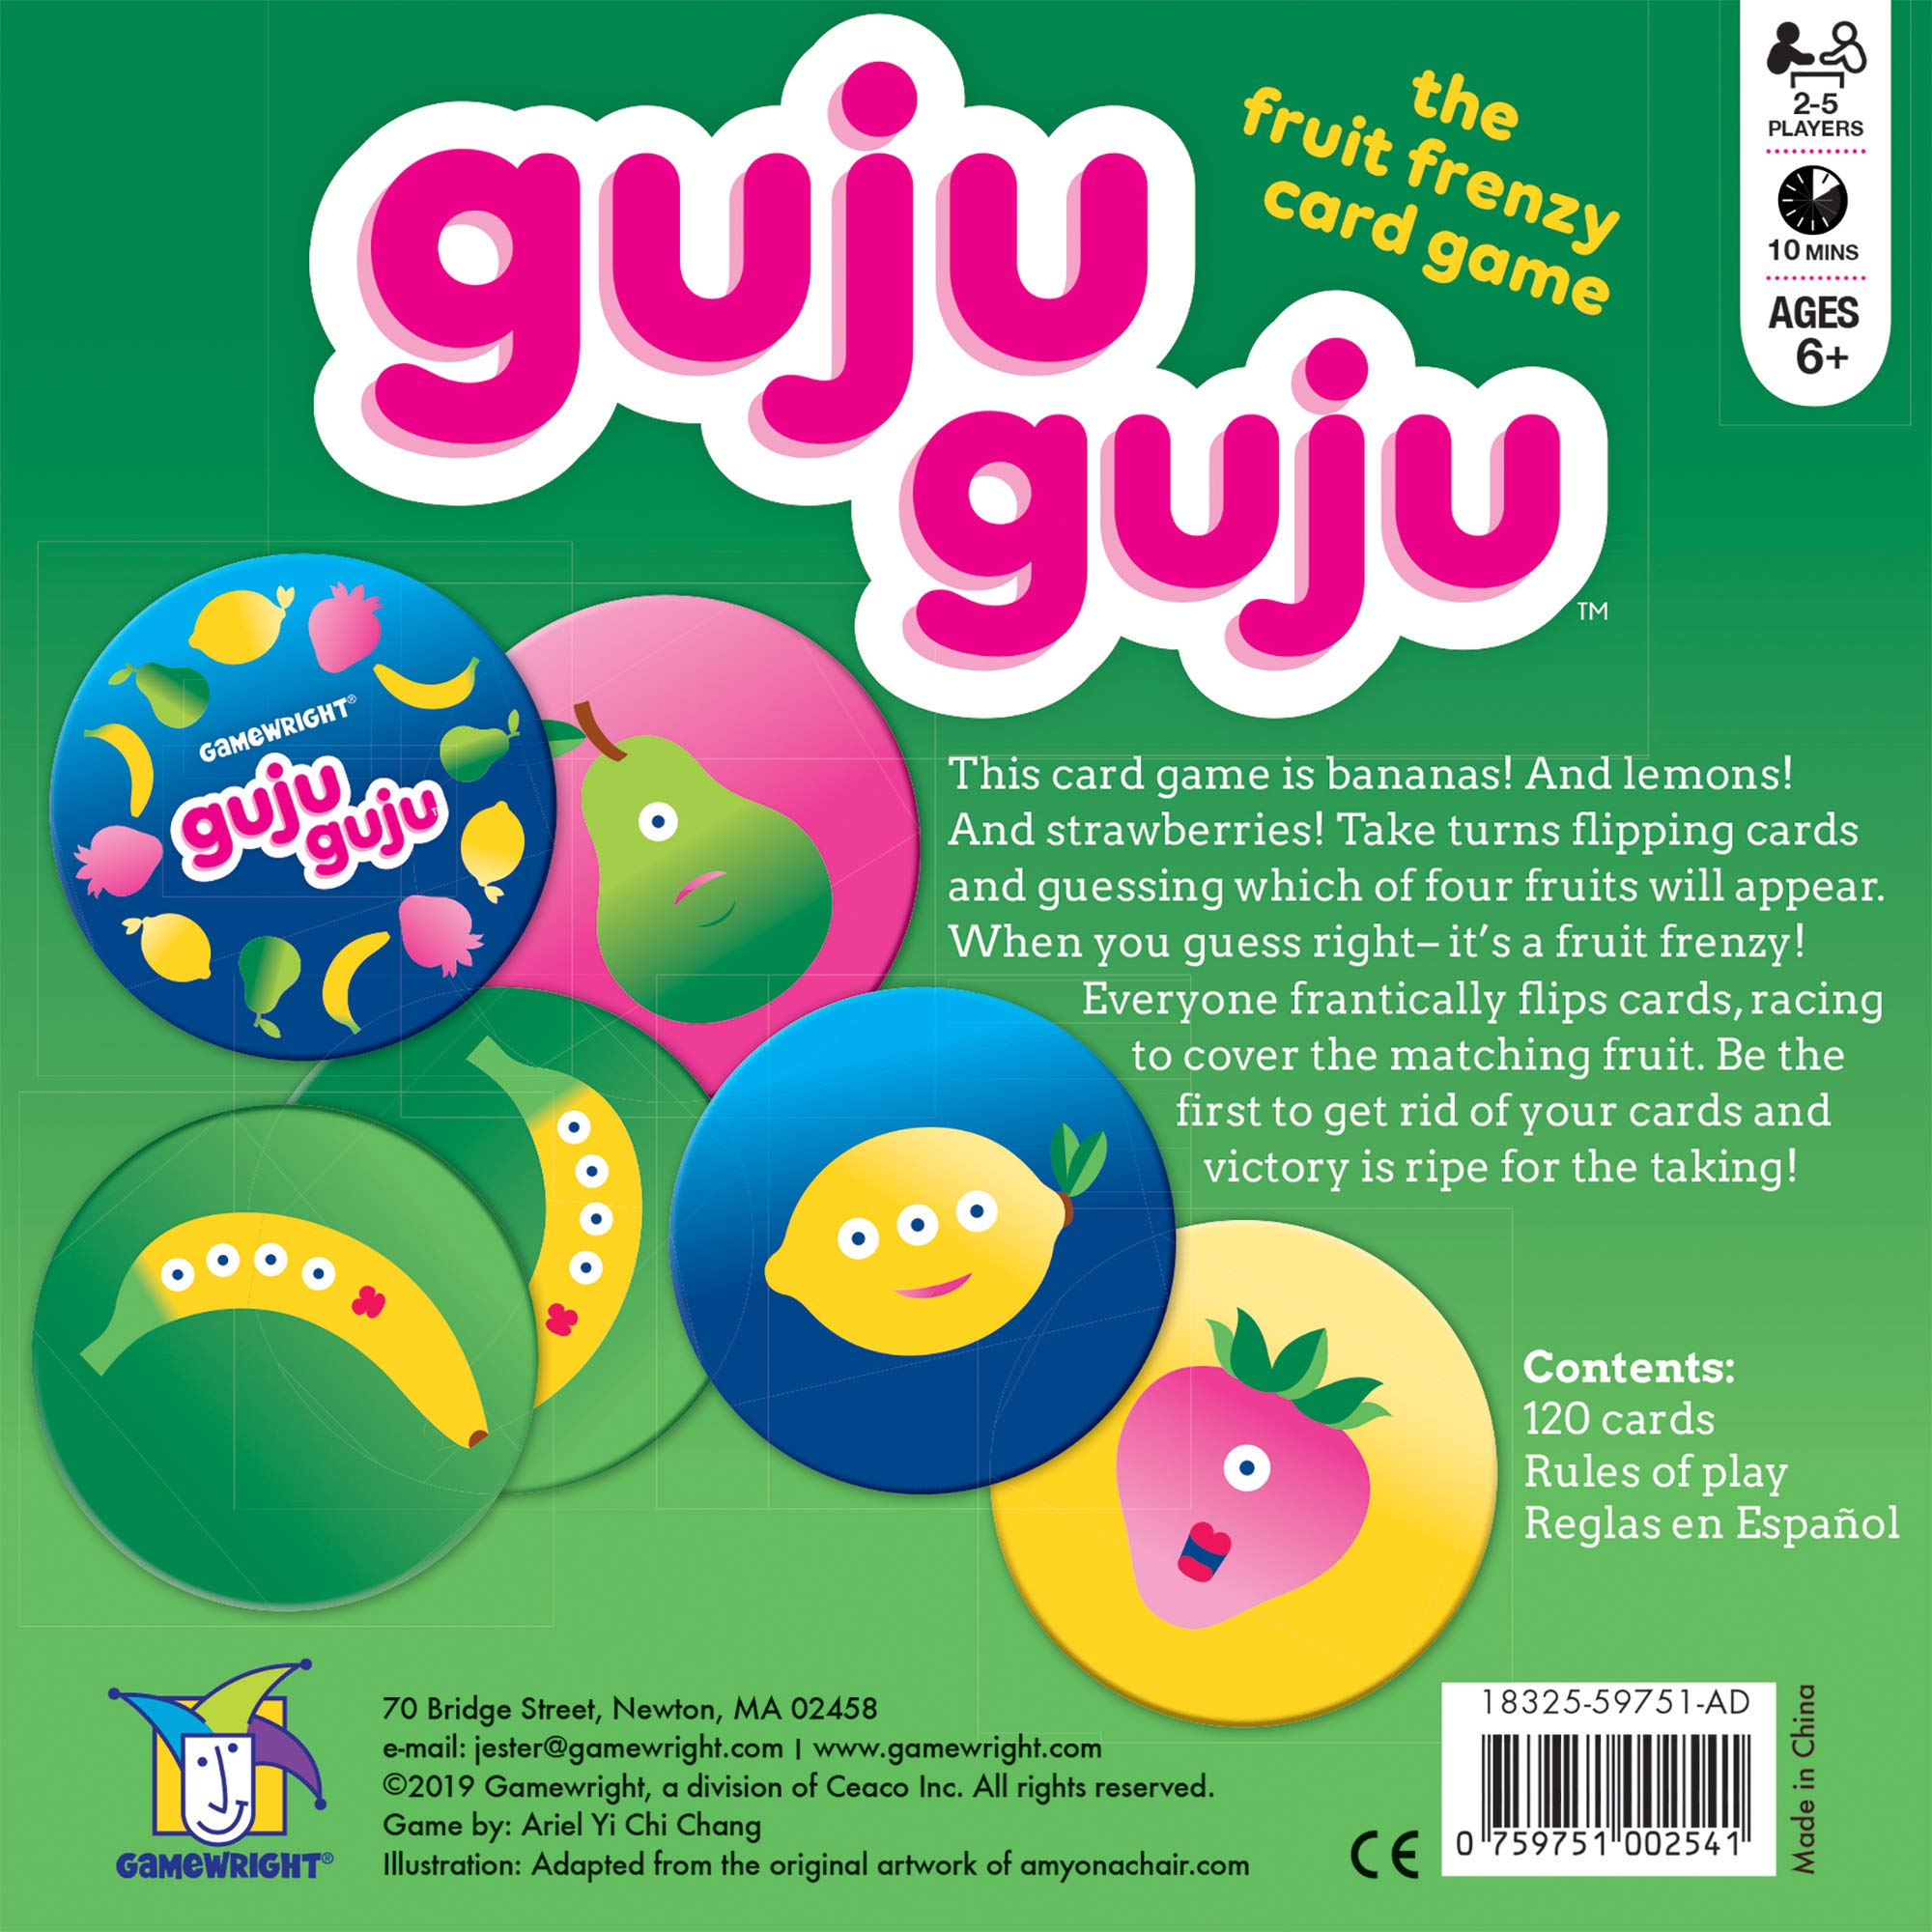 Gamewright Guju Guju - The Fruit Frenzy Card Game Multi-colored, 5